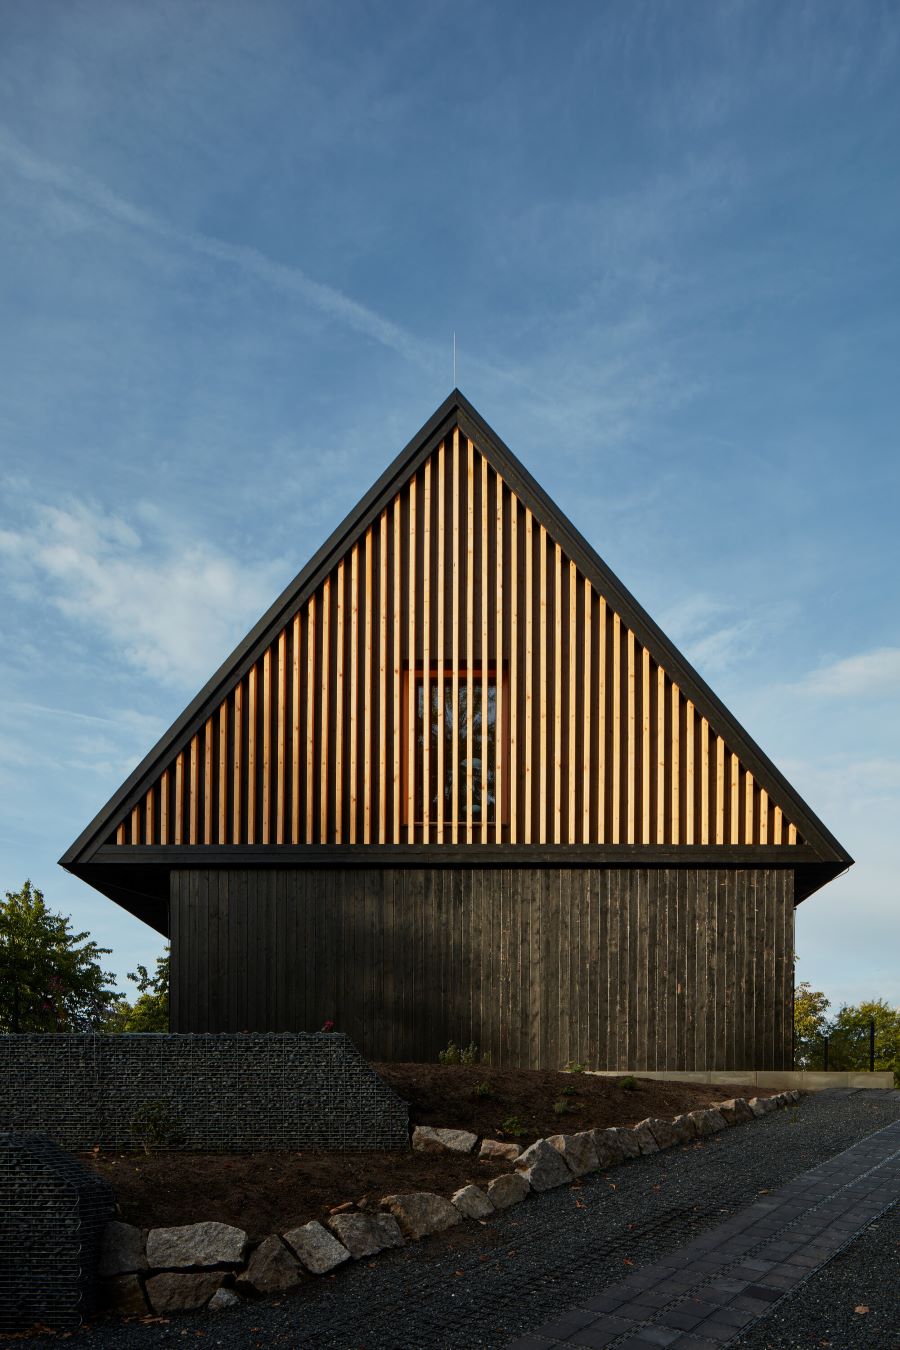 Dom inšpirovaný chatou s drevenou fasádou a výrazným priečelím od ulice.